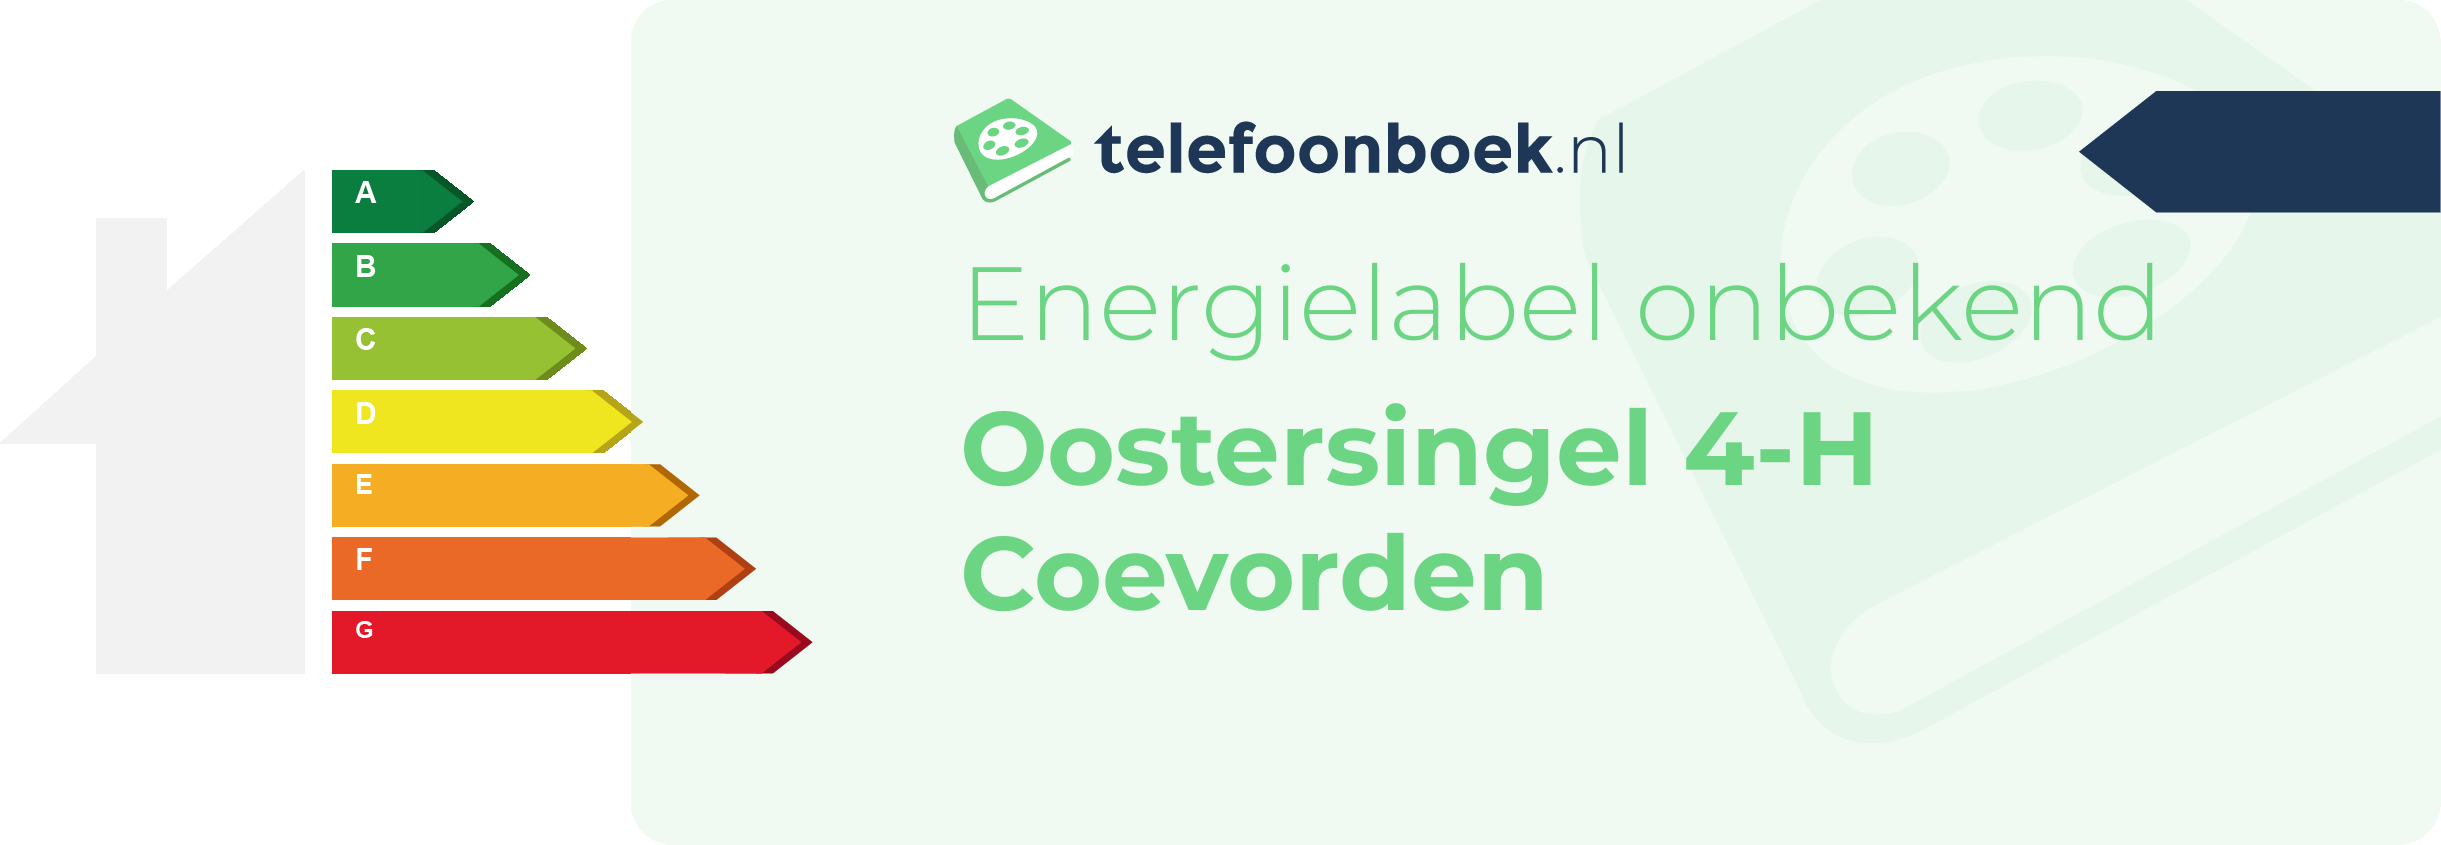 Energielabel Oostersingel 4-H Coevorden